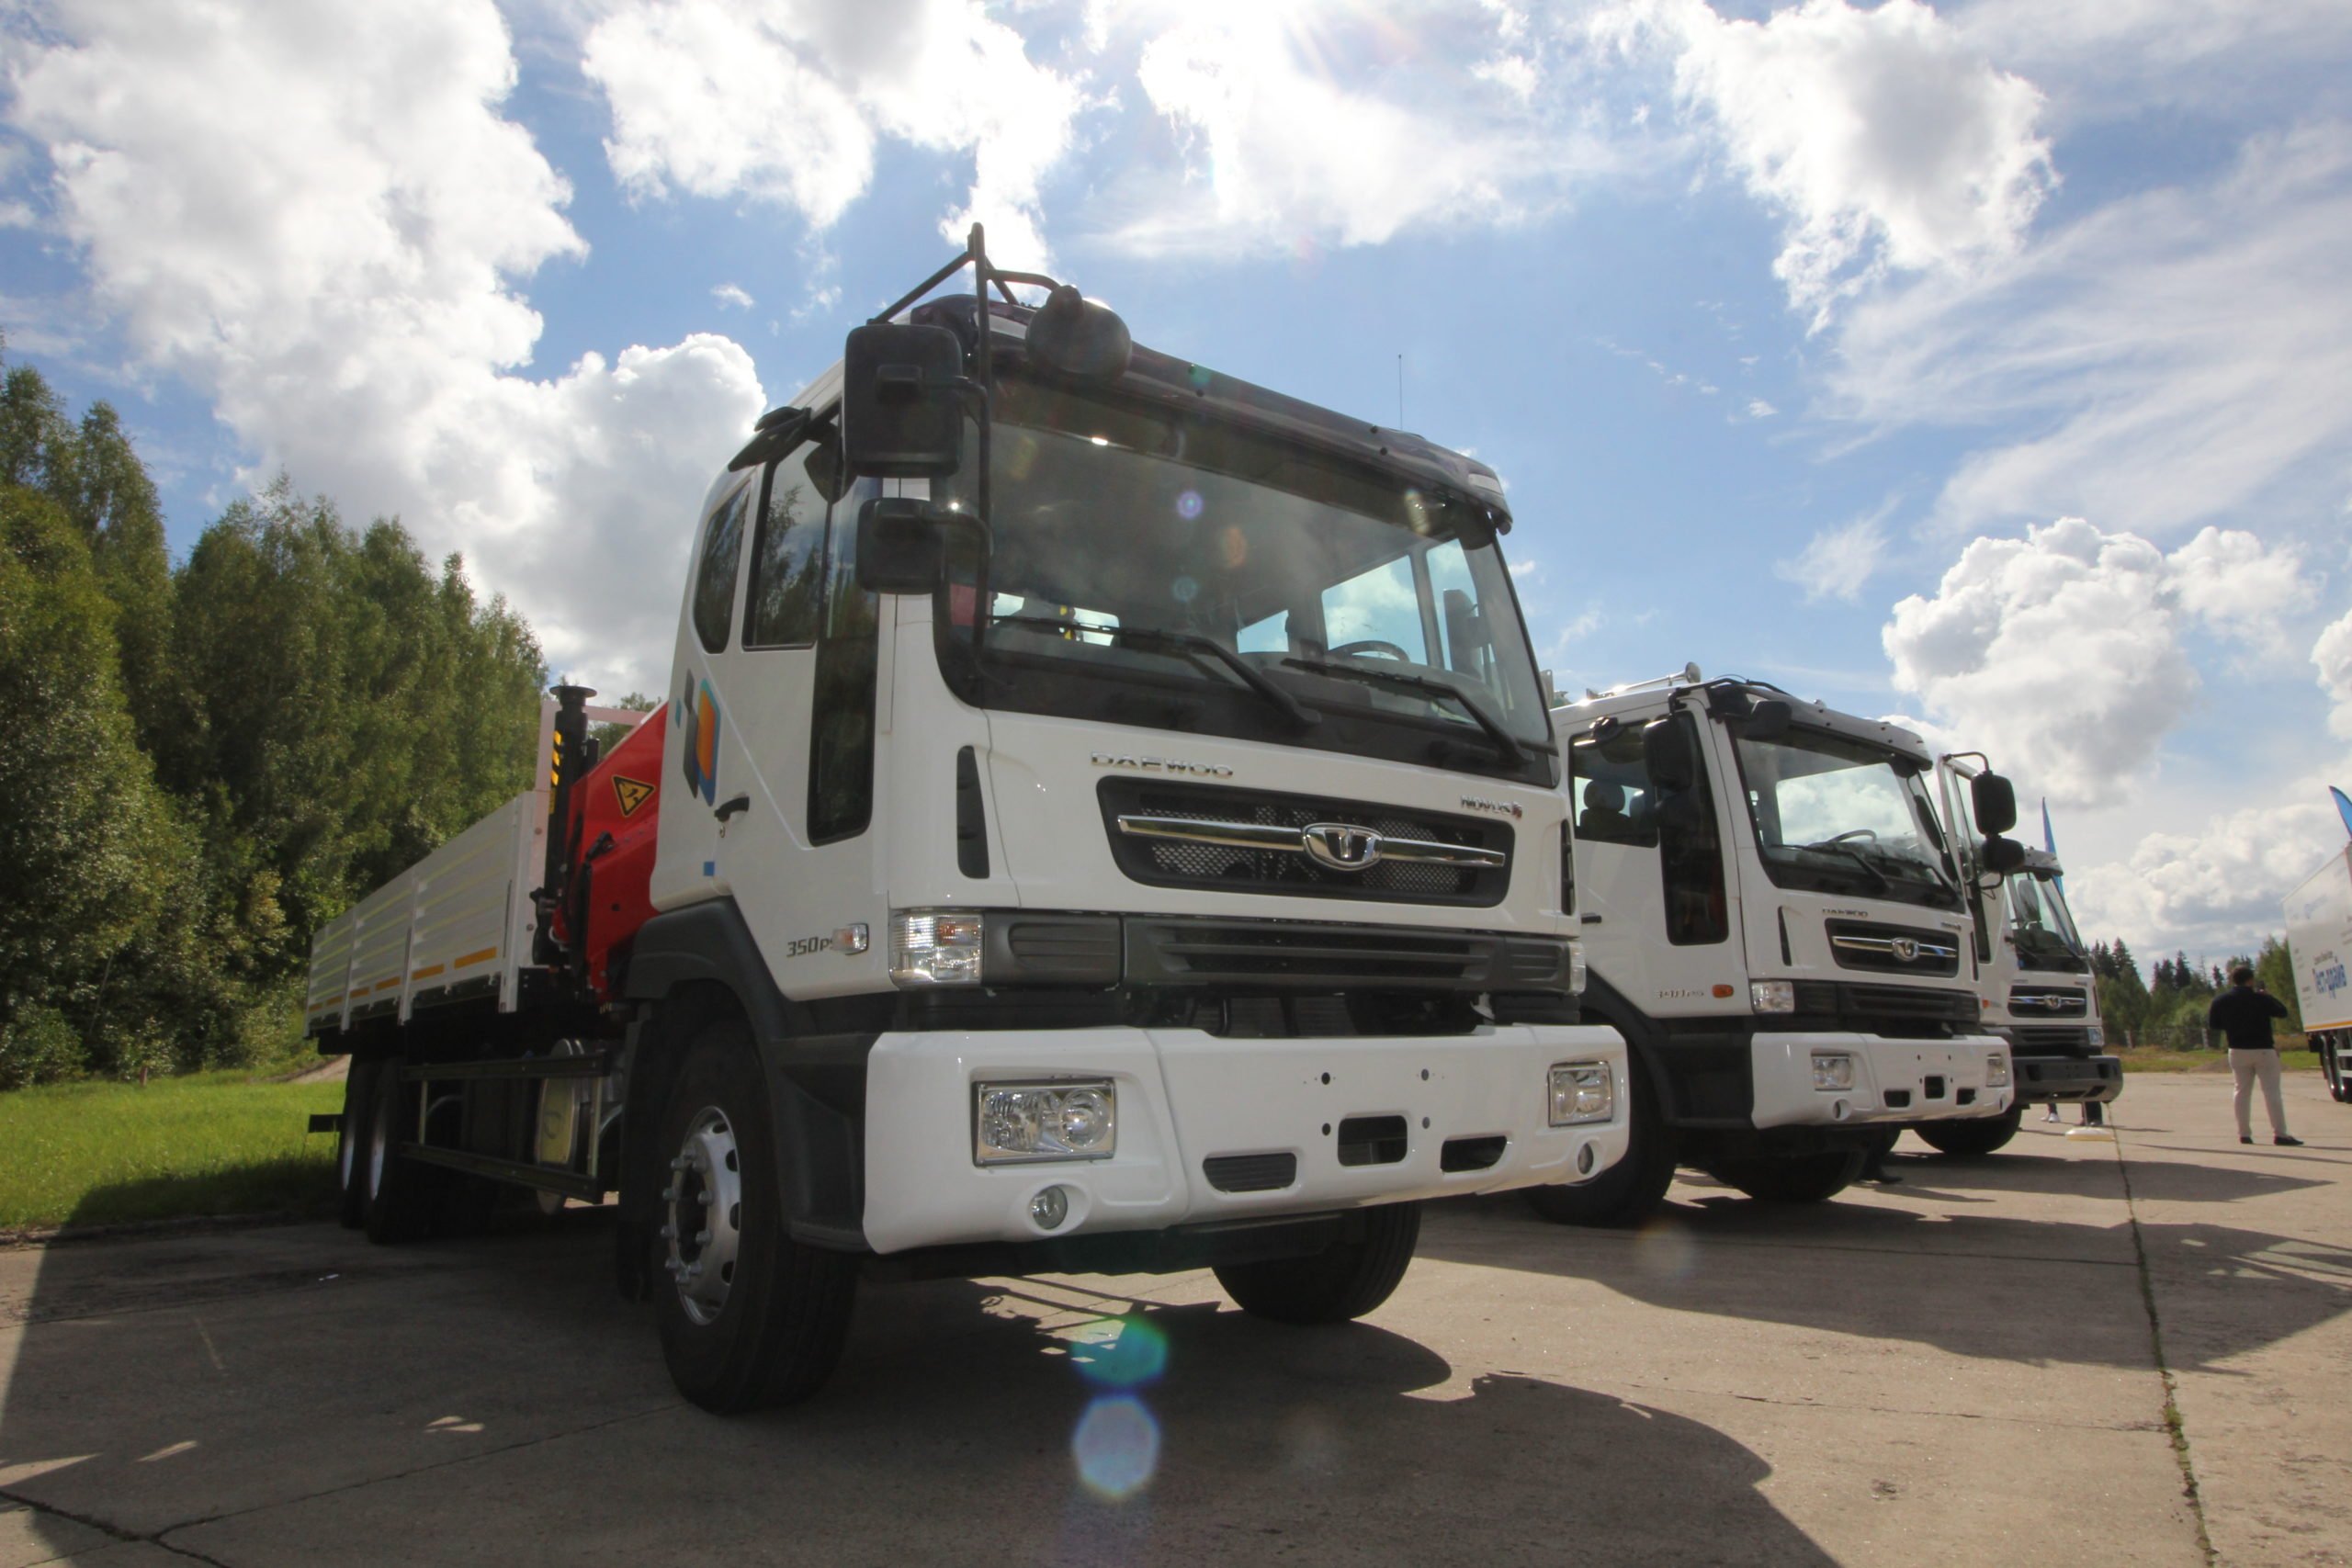 Daewoo Trucks начинает продажи 44-тонного самосвала в России